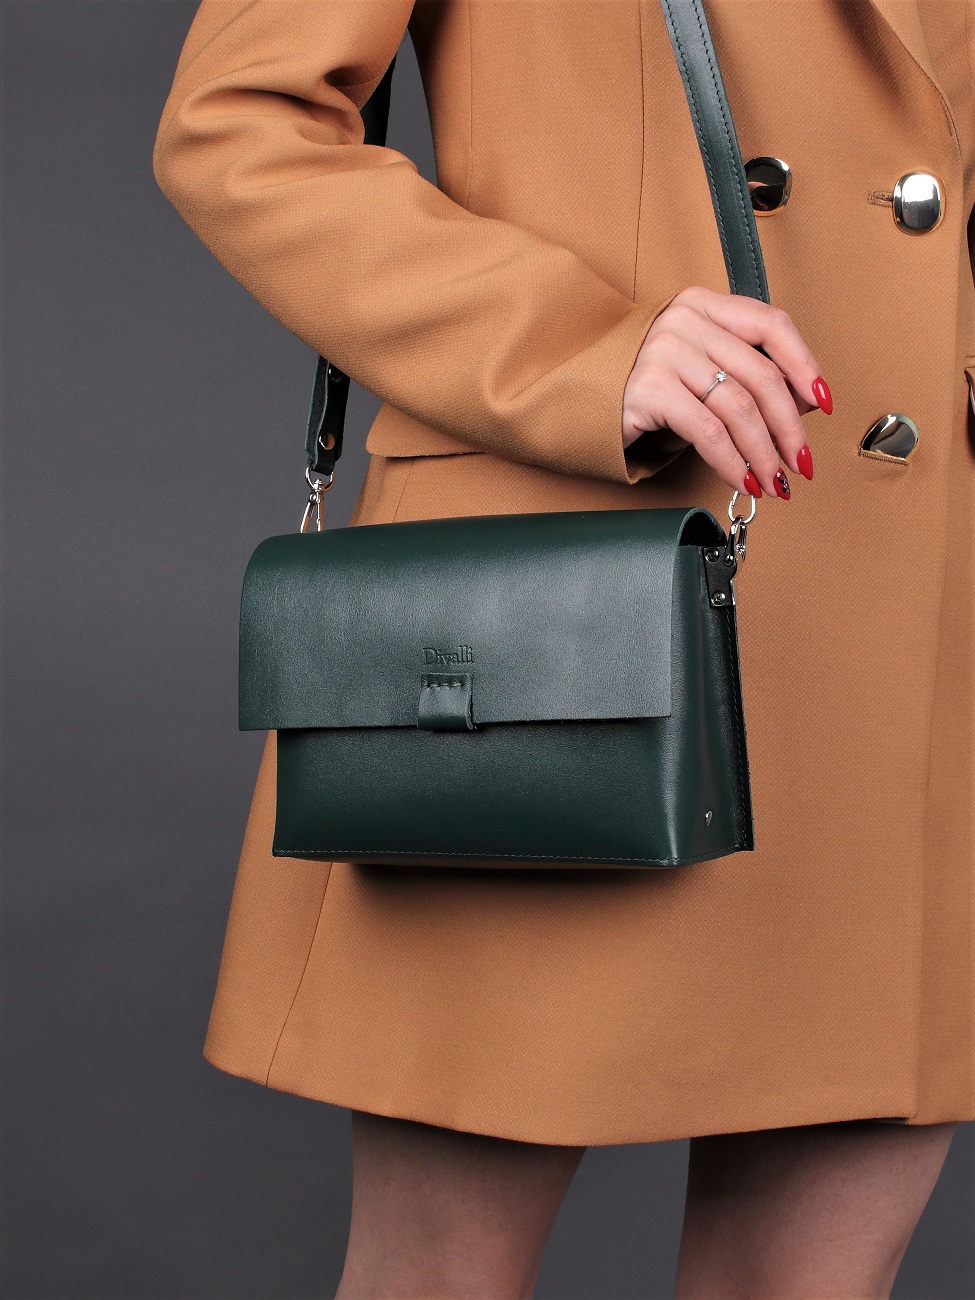 Женская сумка через плечо из натуральной кожи изумрудная A005 emerald